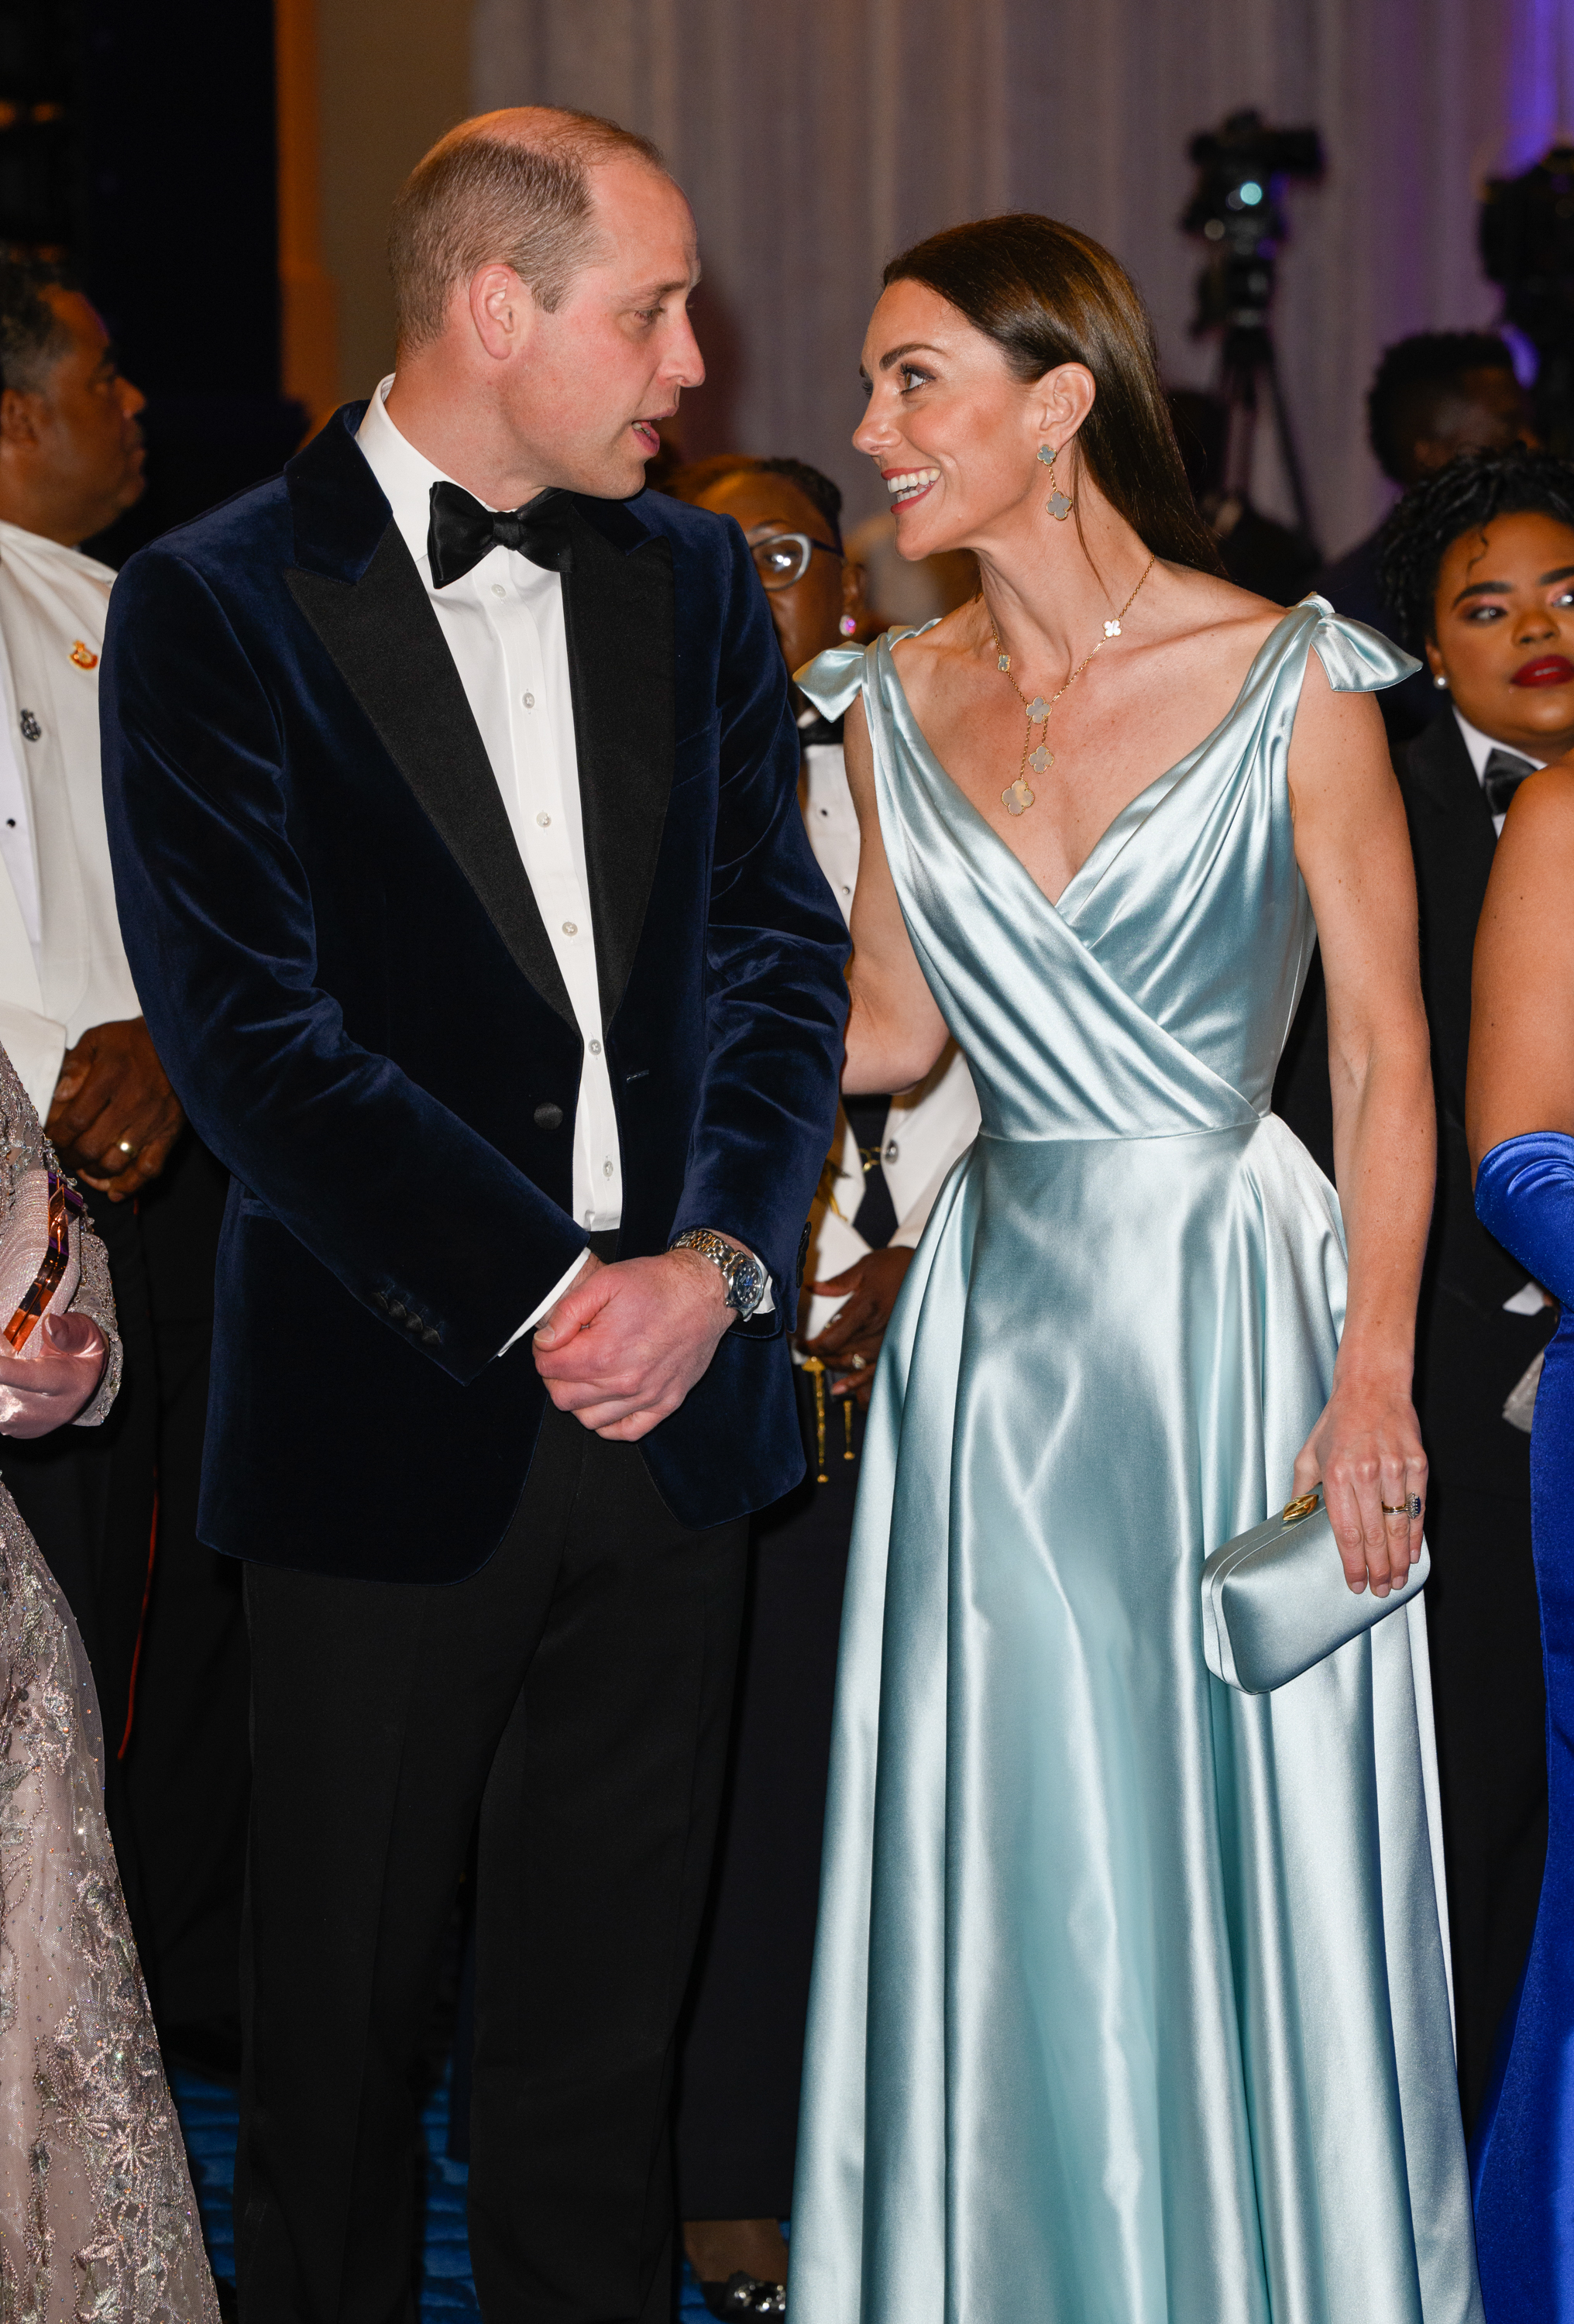 William et Kate, alors duc et duchesse de Cambridge, ont visité plusieurs pays des Caraïbes en mars 2022